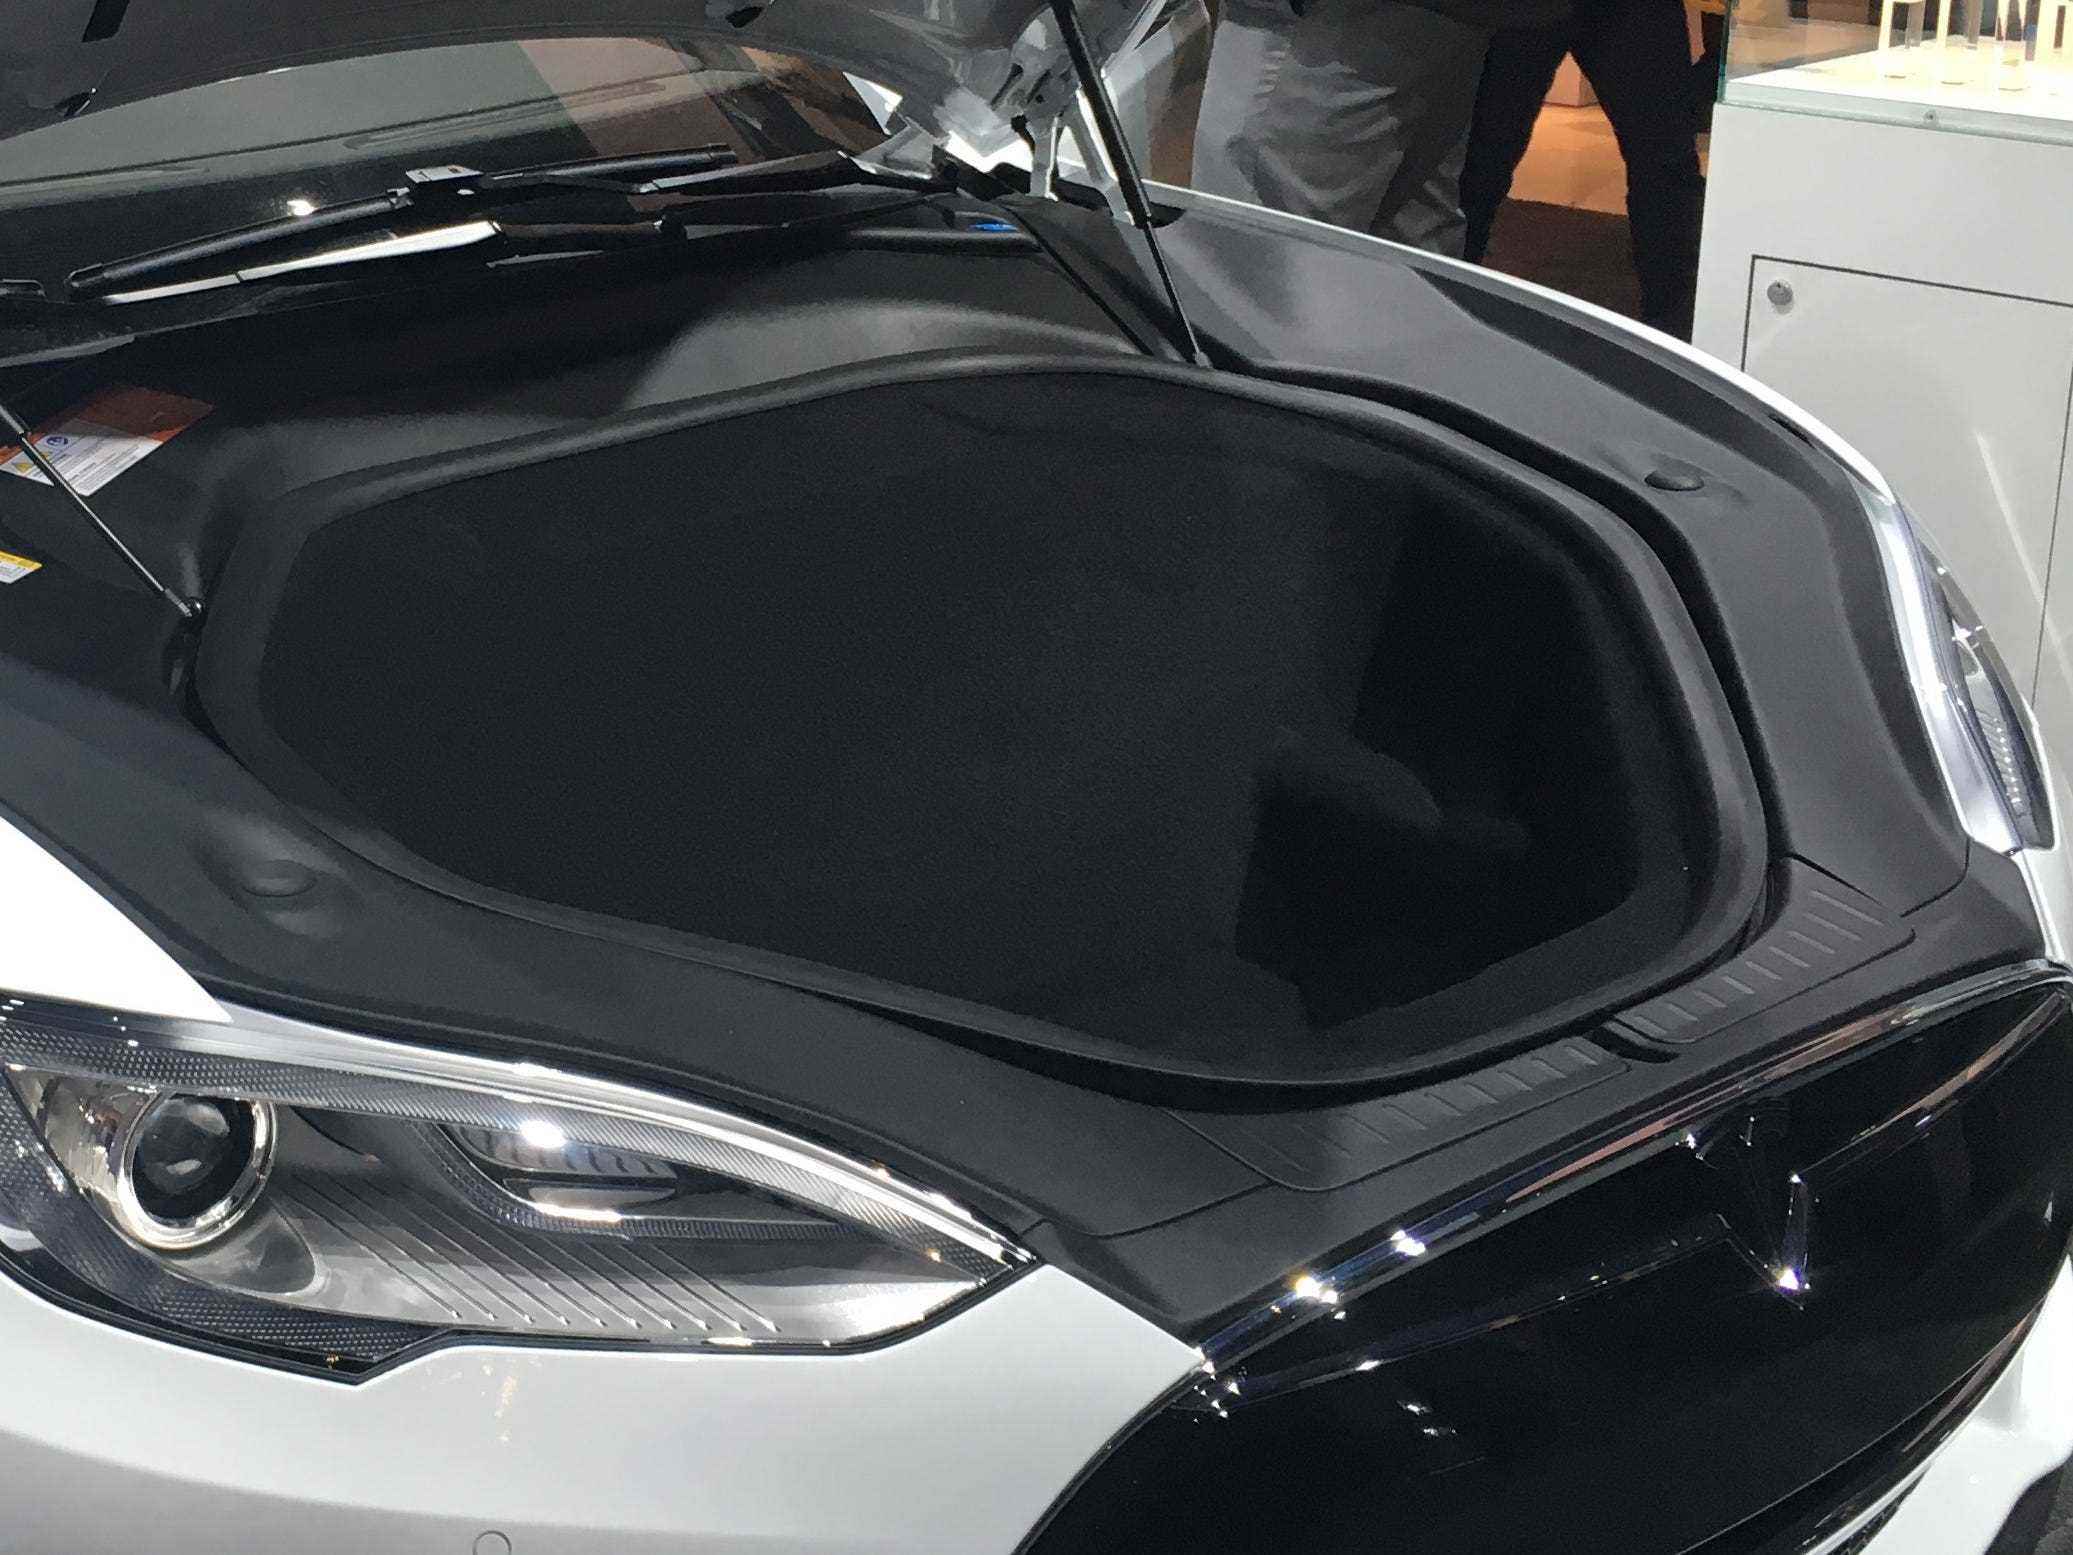 Tesla Model S P90D Ludicrous Mode CES 